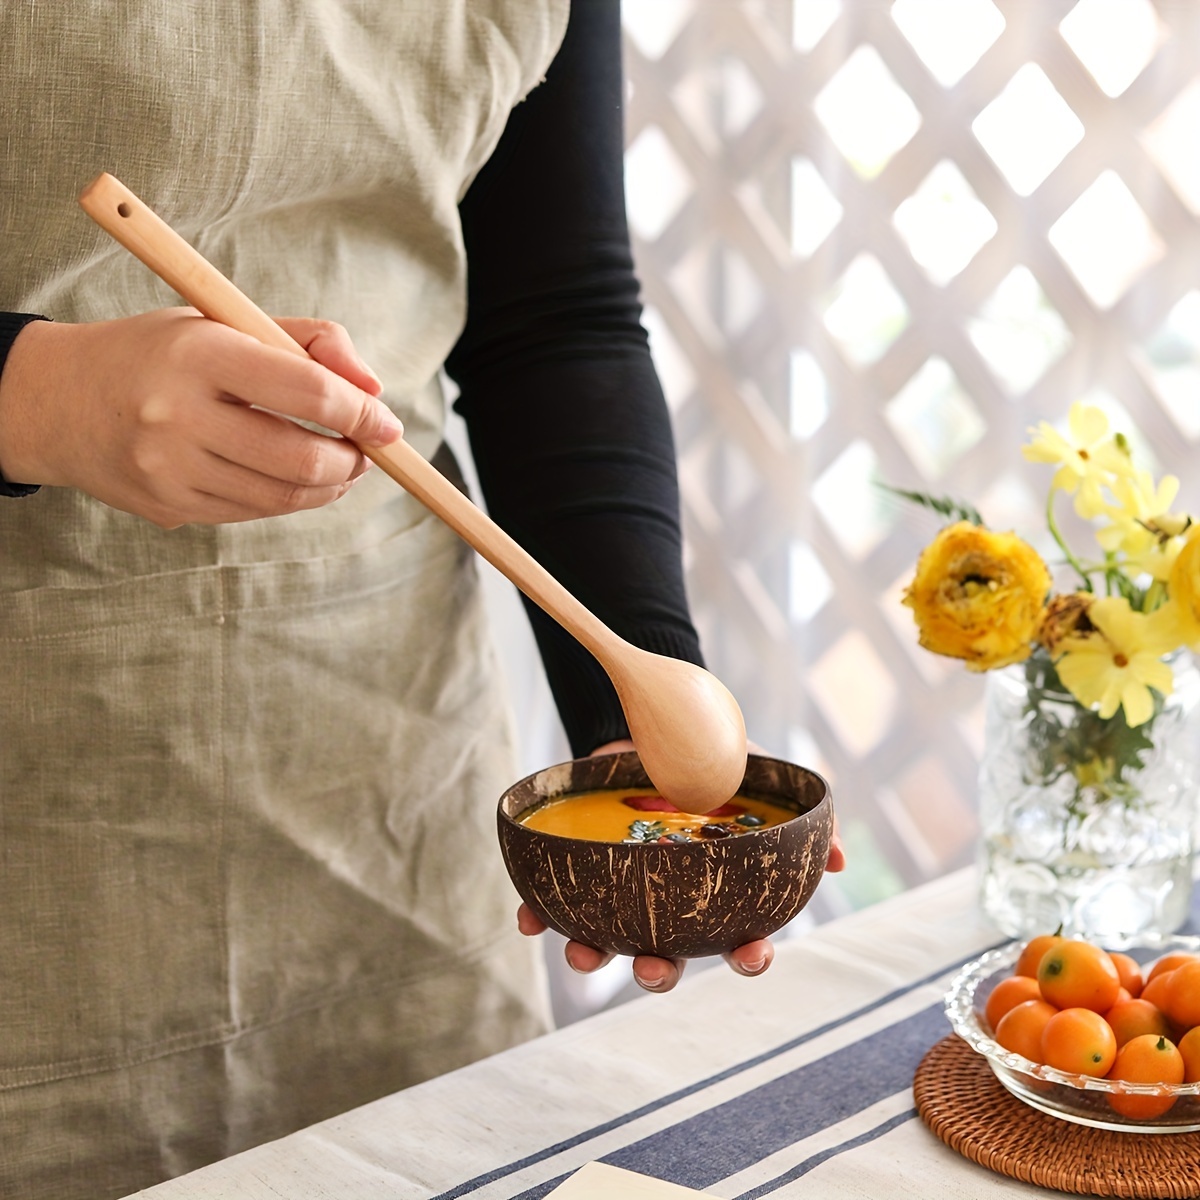 Wooden Pot Handles Cooking Utensils Replacement Handles For - Temu